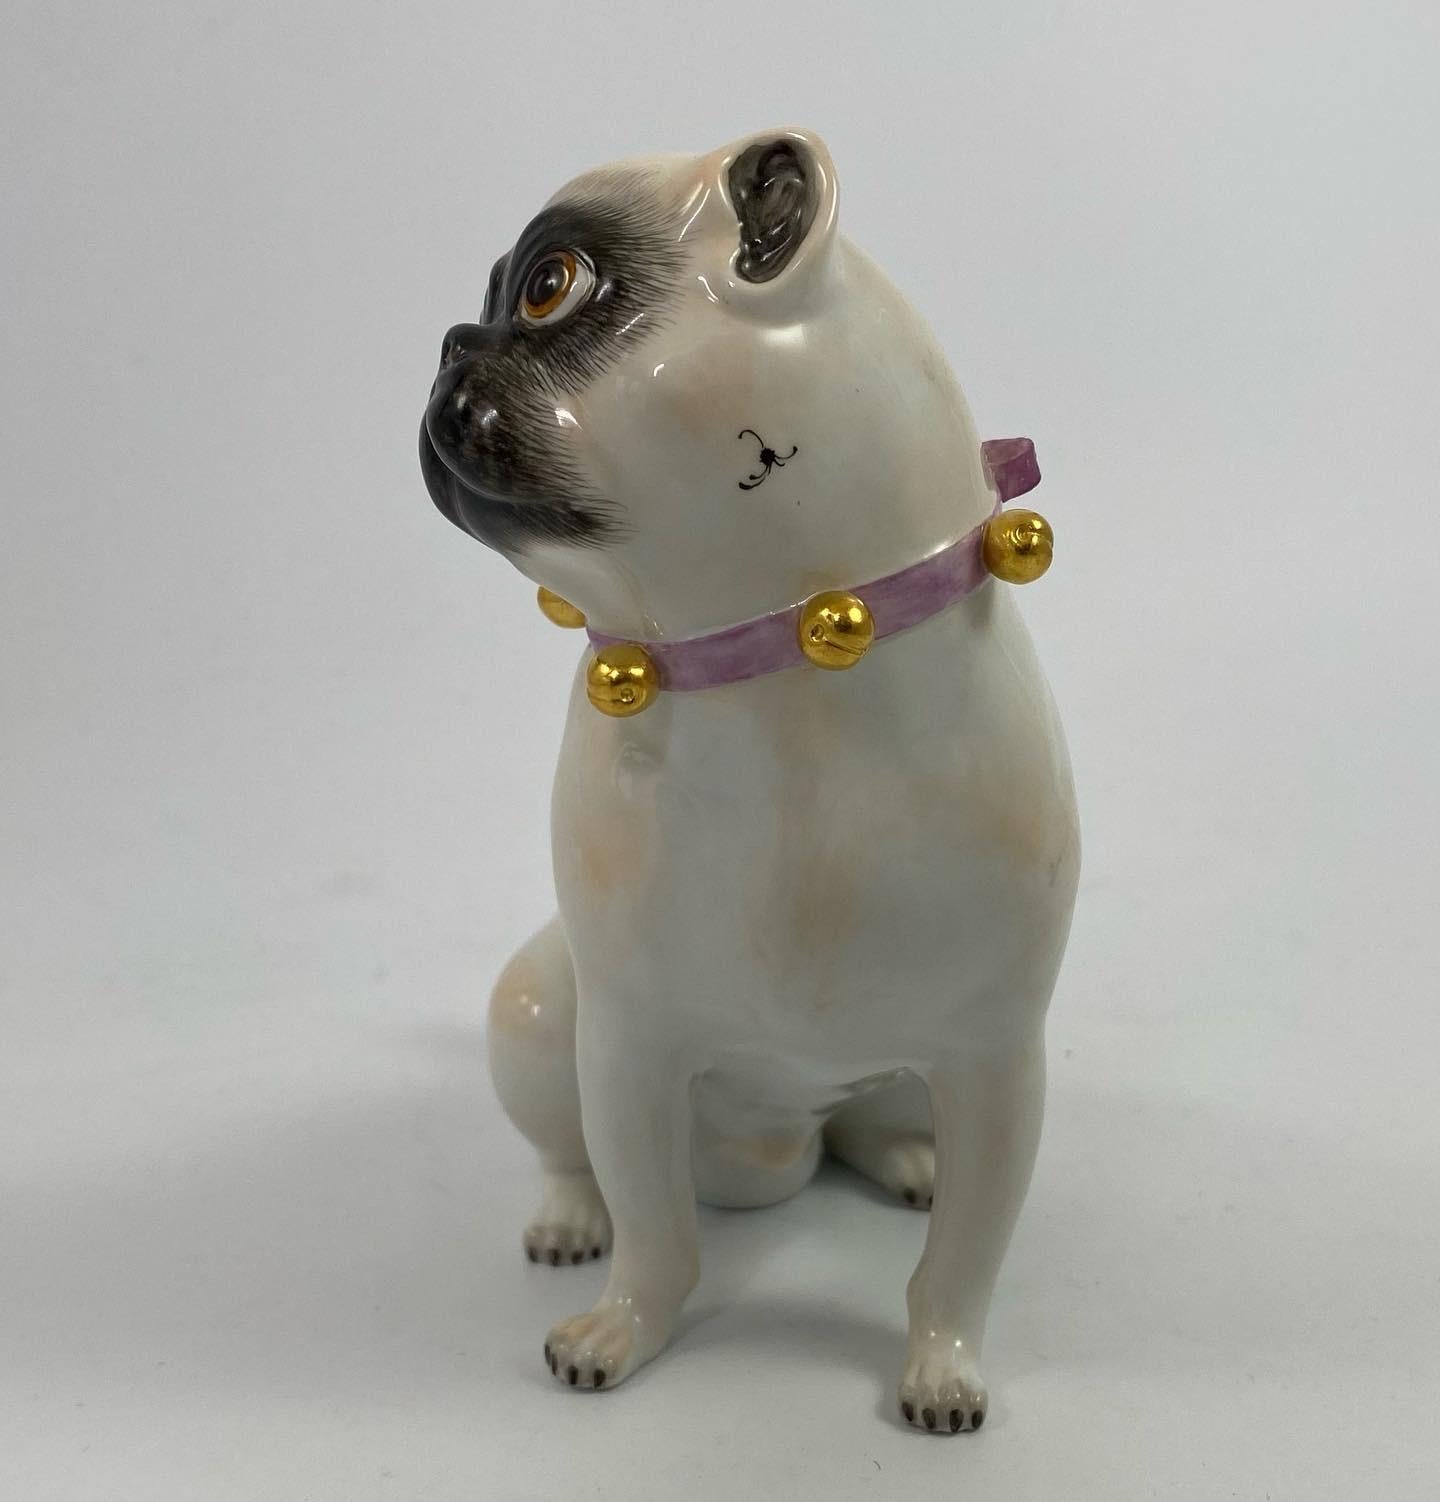 Chien carlin en porcelaine de Meissen, 20e siècle. Modelé d'après l'original de J.J. Kandler, le chien carlin assis, porte un collier rose, noué en un nœud, et accroché à cinq clochettes dorées.
La marque des épées croisées en bleu sous glaçure,